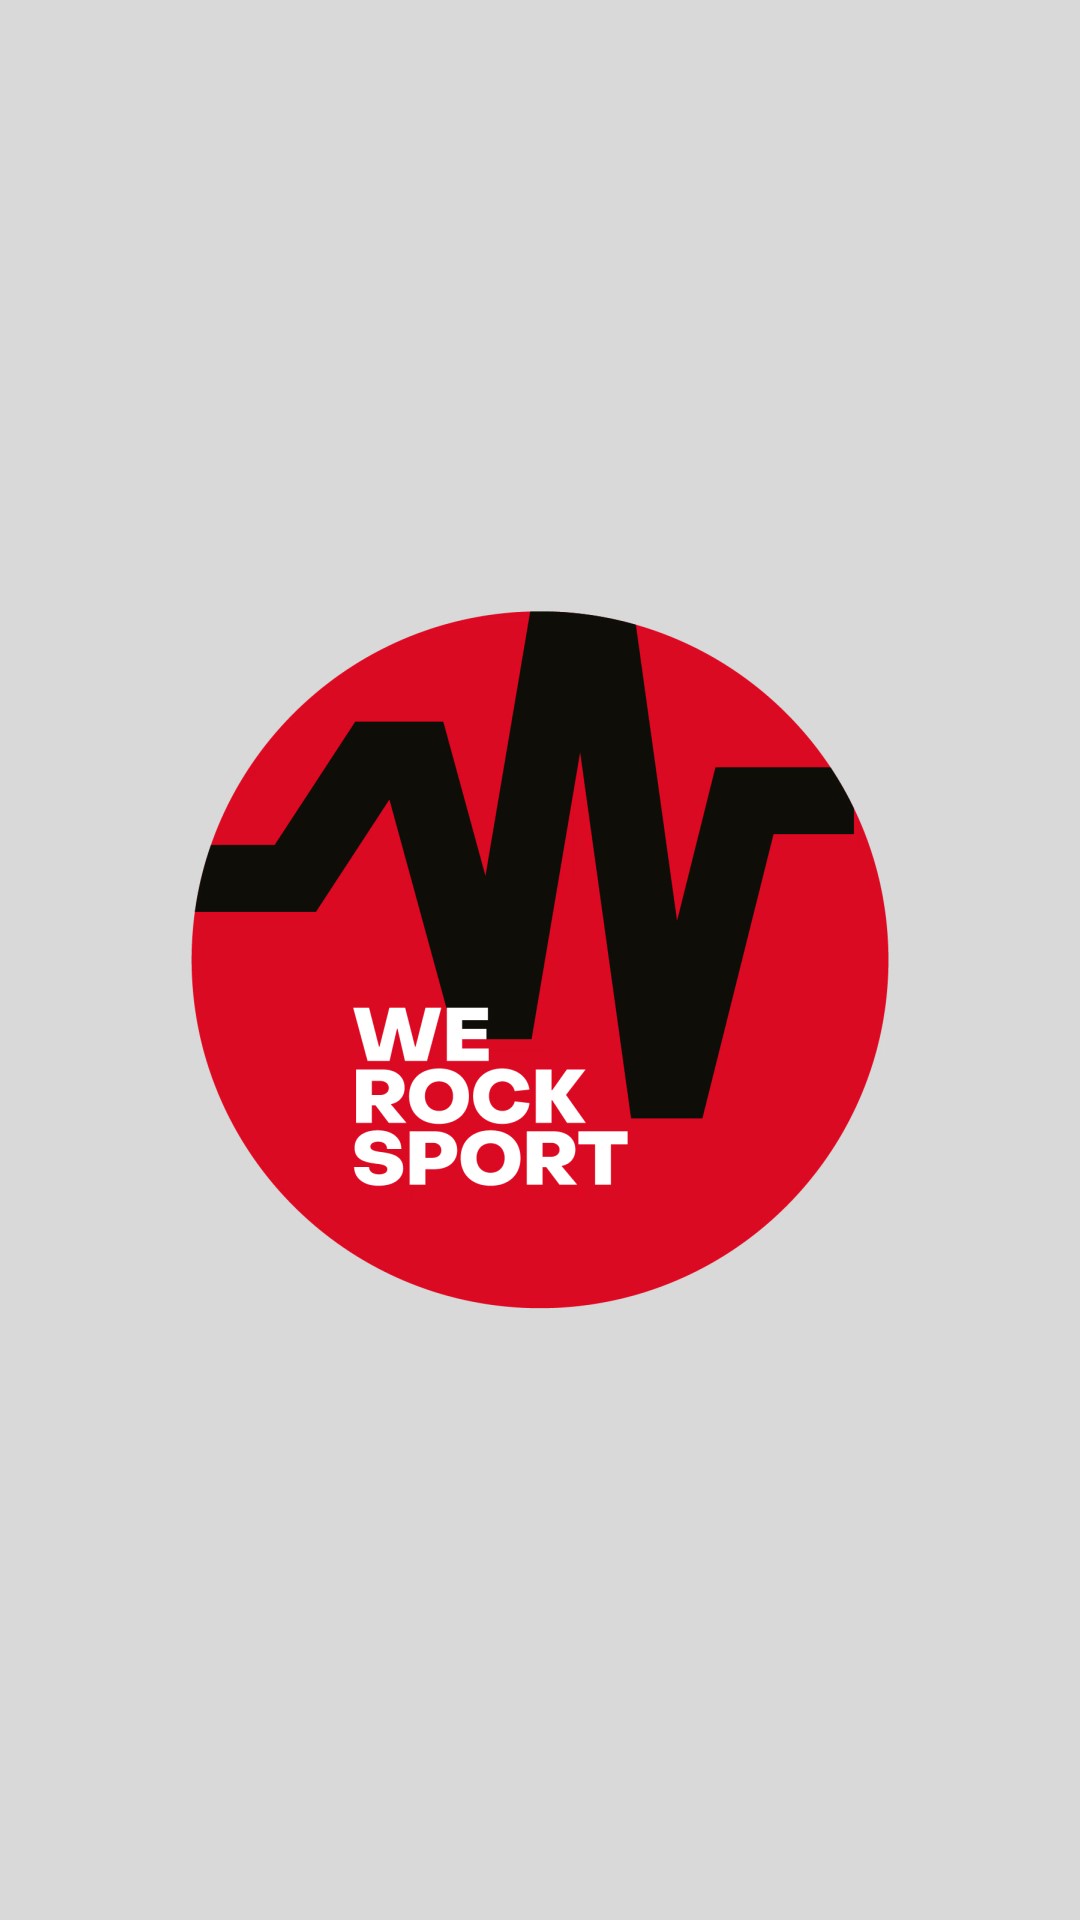 We rock sport